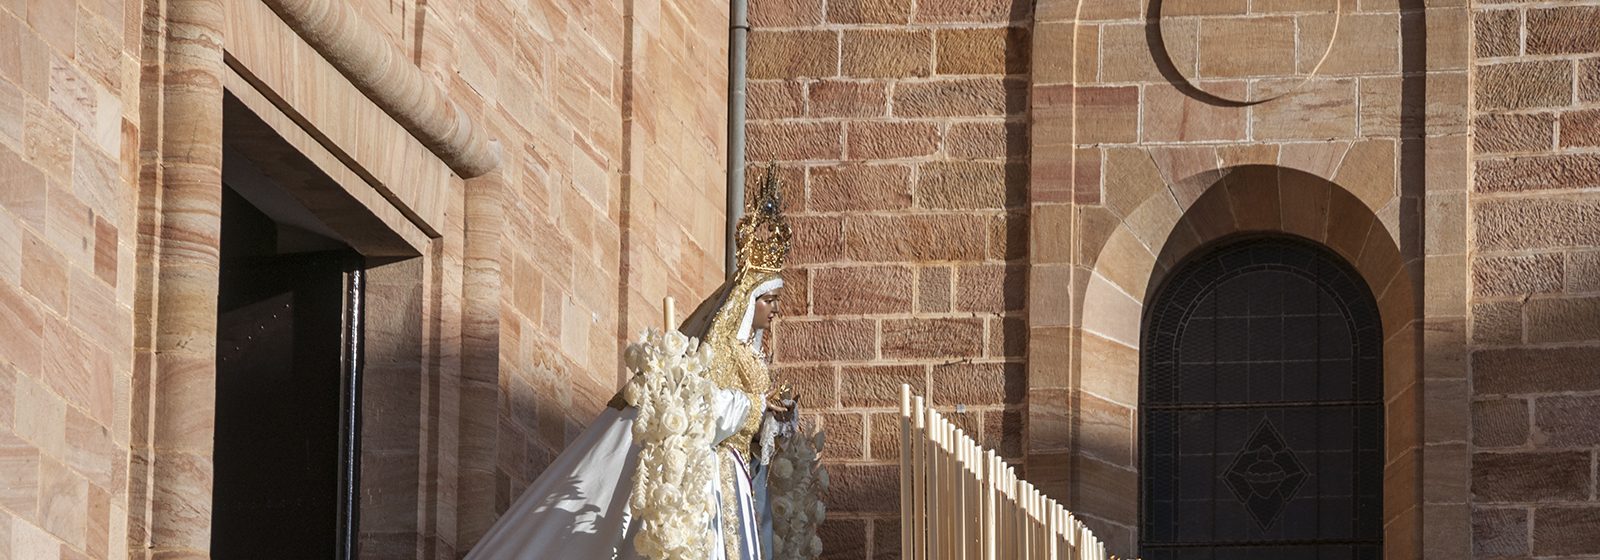 Foto del paso de palio de Ntra. Sra. de La Paz (de la Hdad. de la Santa Cena) apareciendo ante su público un Domingo de Ramos por la tarde más.